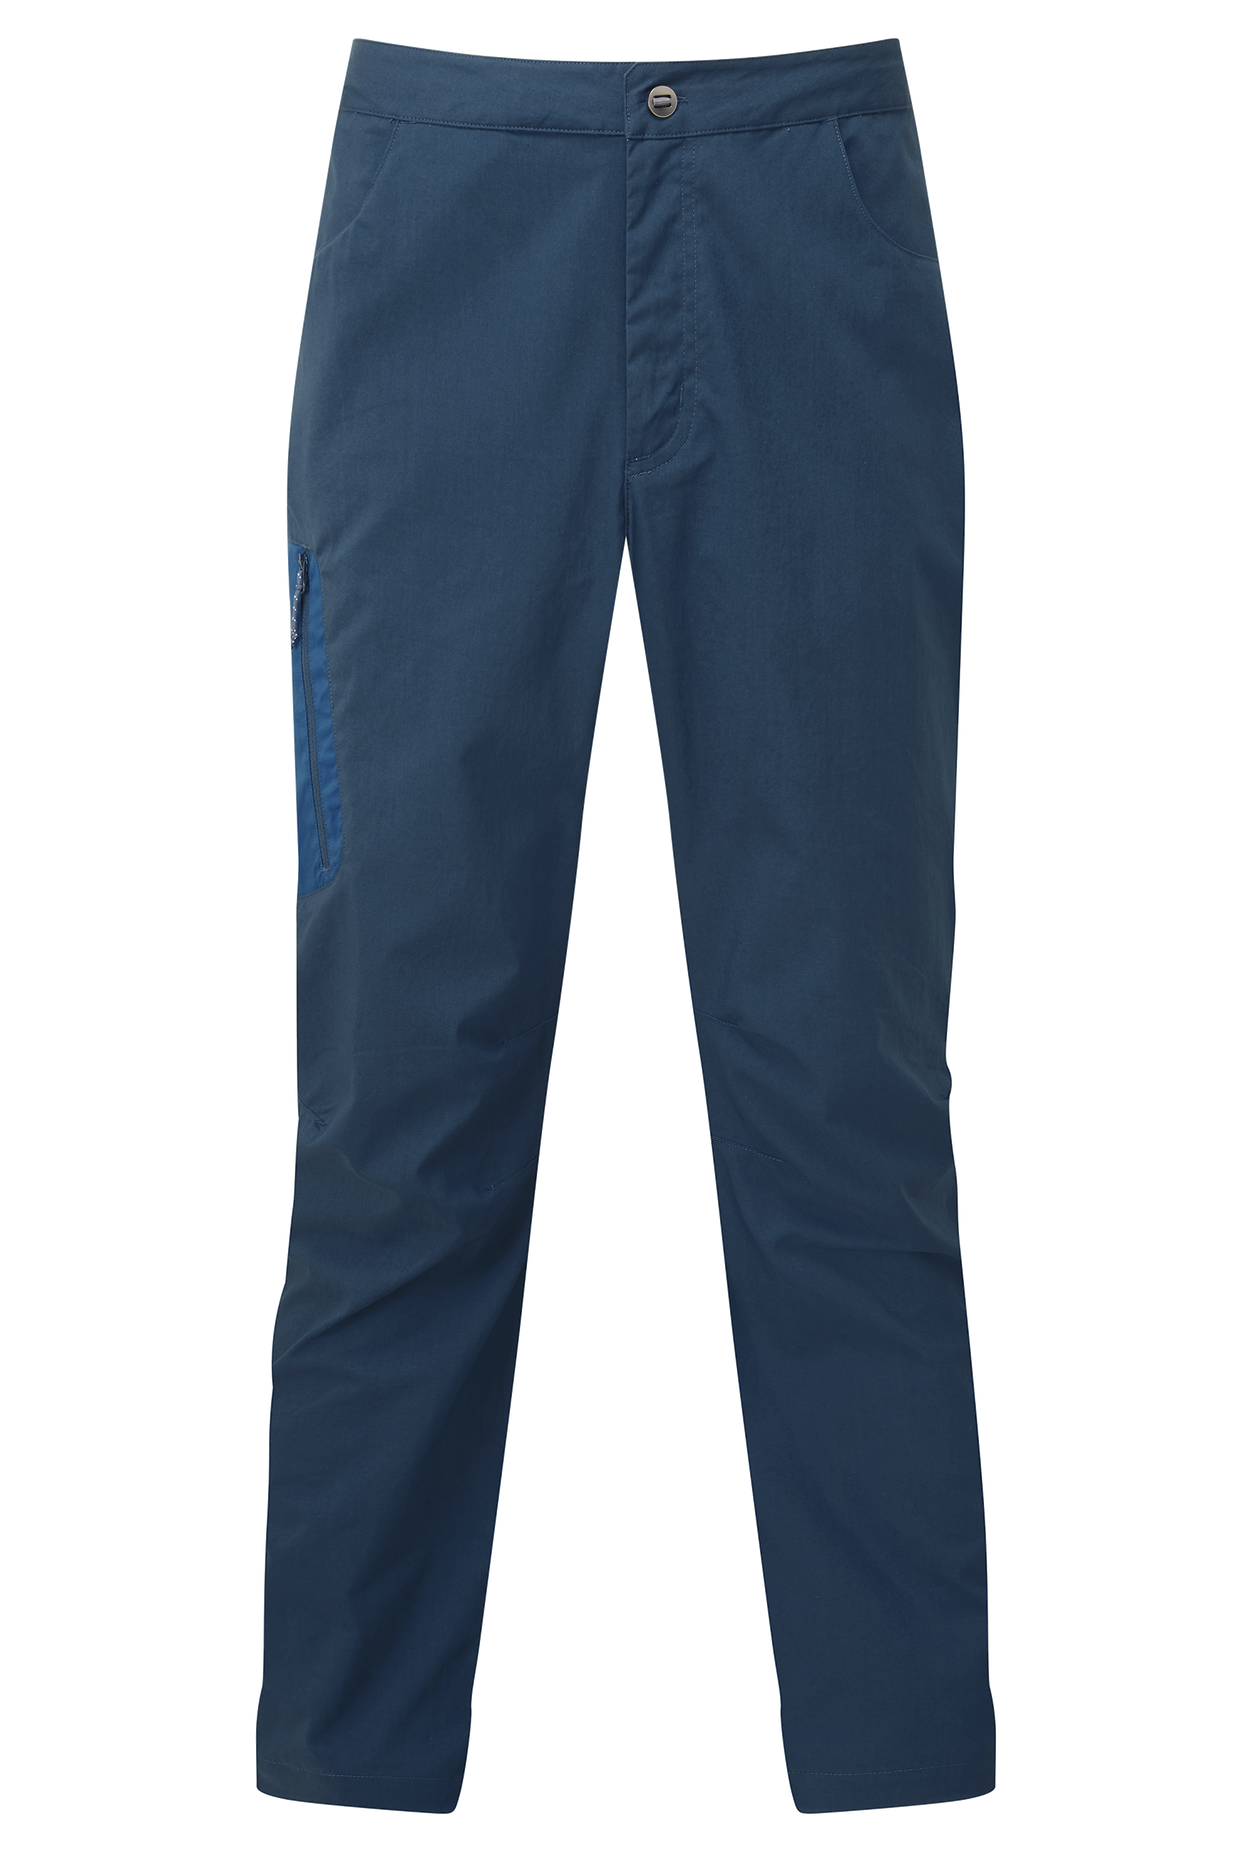 Mountain equipment pánské outdoorové kalhoty Anvil Mens Pant - prodloužené Barva: Majolica/Alto blue, Velikost: M